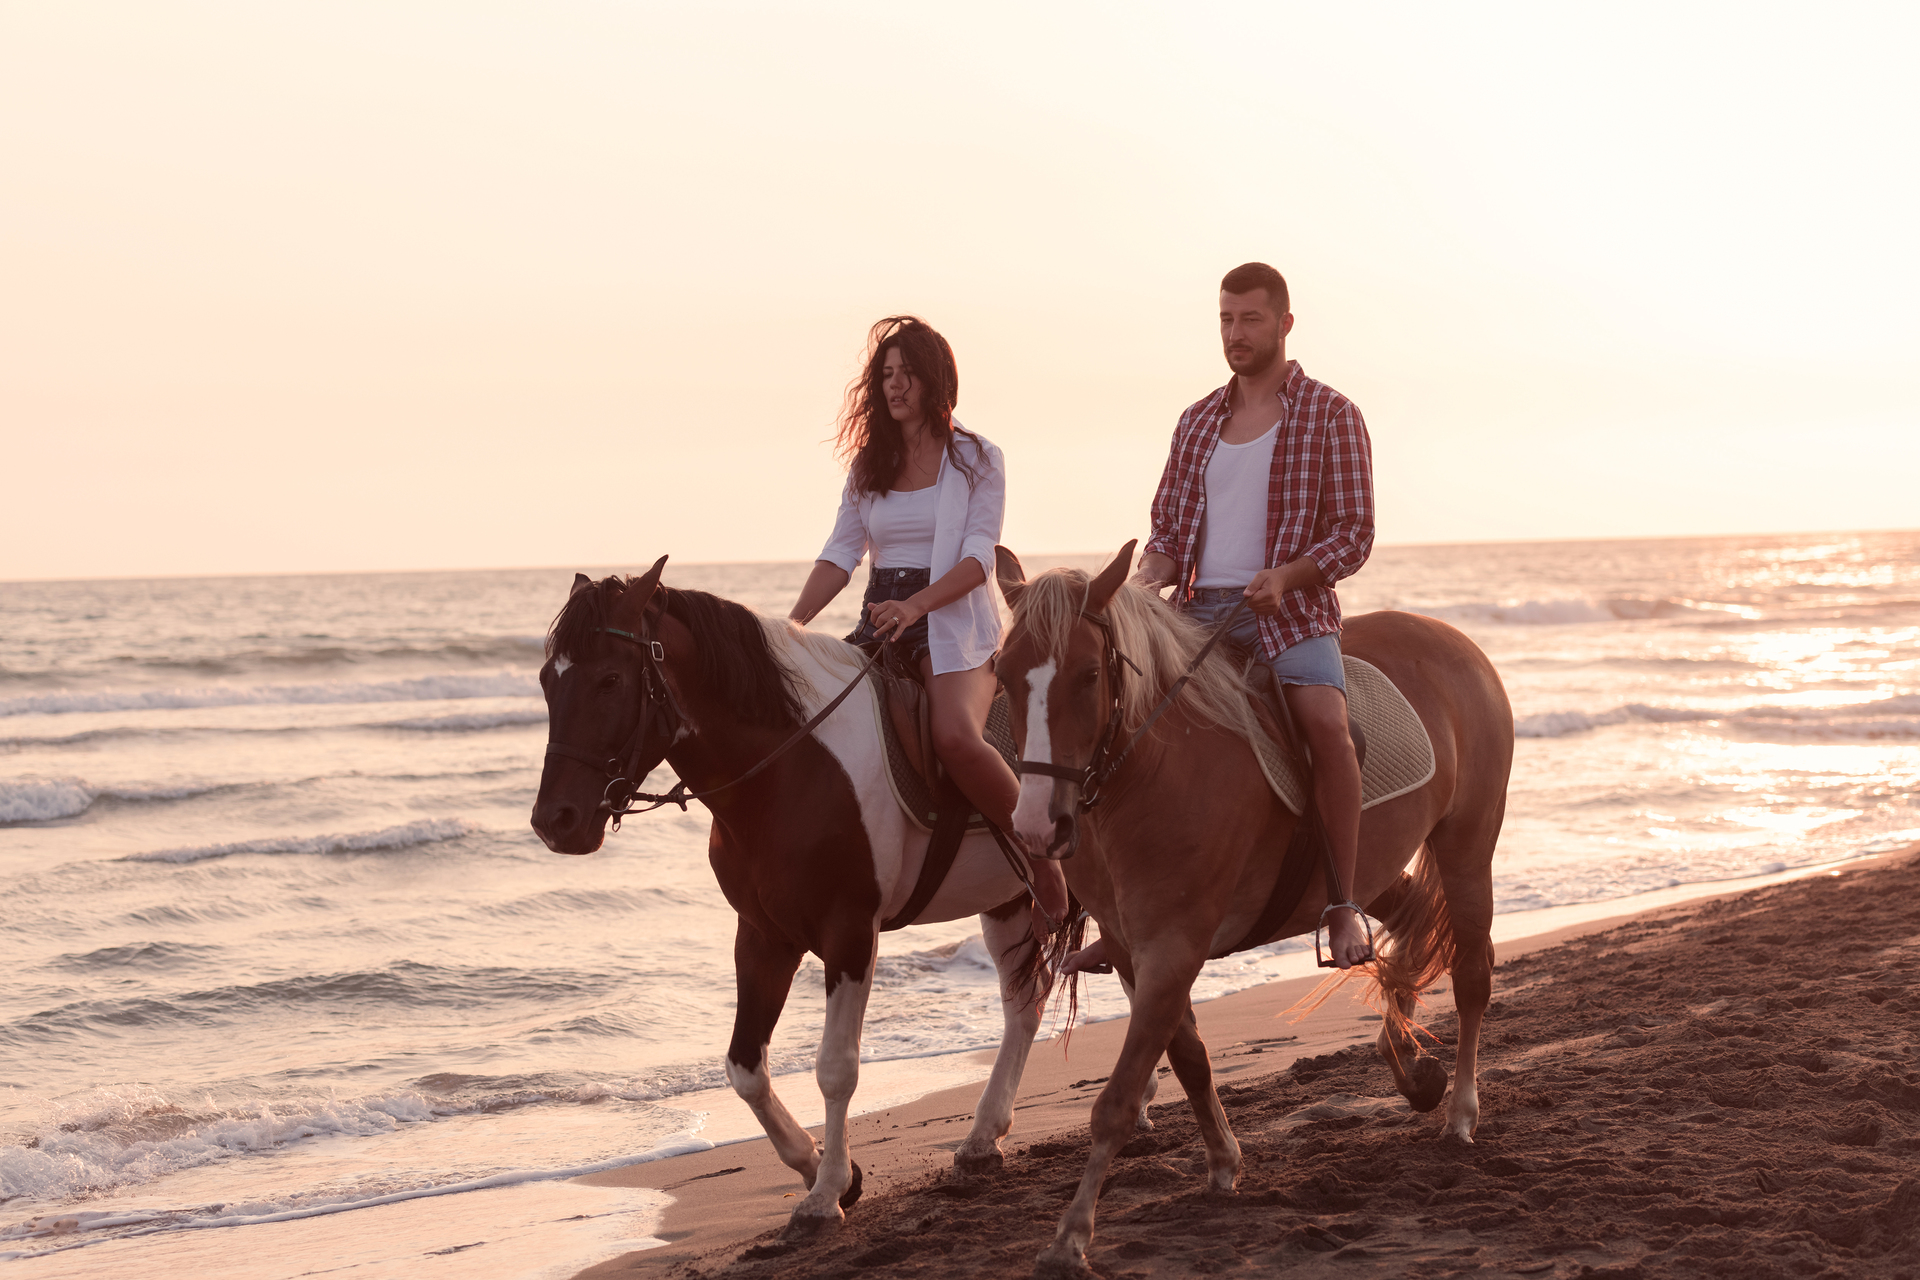 Na tym zdjęciu widzimy parę, która jeździ konno po plaży. Kobieta trzyma wodze swojego konia, a mężczyzna prowadzi swojego konia obok niej. W tle widać błękitne morze i piękny zachód słońca. Para wydaje się być bardzo zadowolona z przejażdżki i uśmiechnięta. Całość tworzy romantyczną i malowniczą atmosferę, która idealnie wpisuje się w letnie wakacje nad morzem.